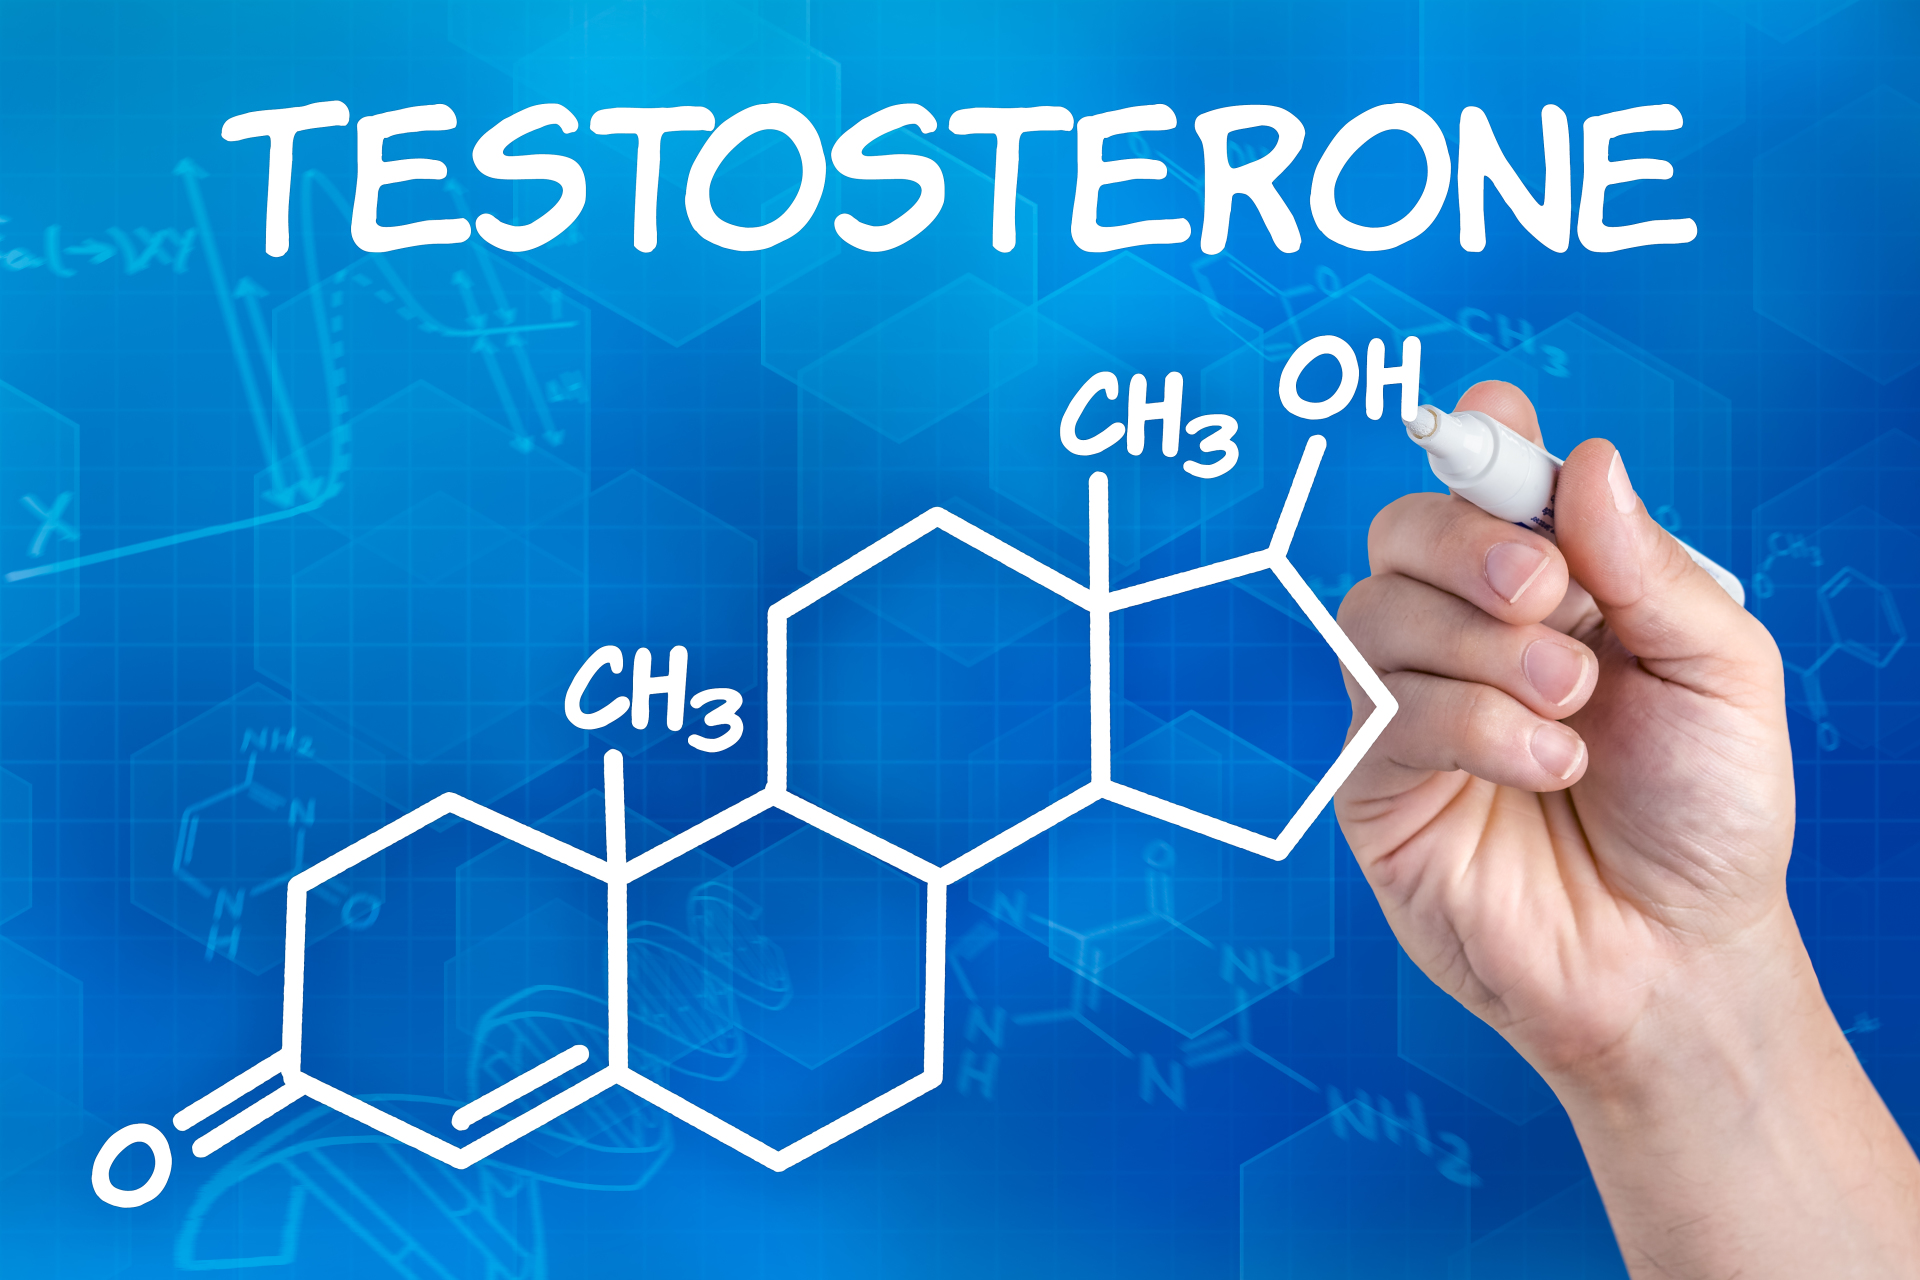 Заместительная терапия тестостероном и симптомы со стороны нижних мочевых путей